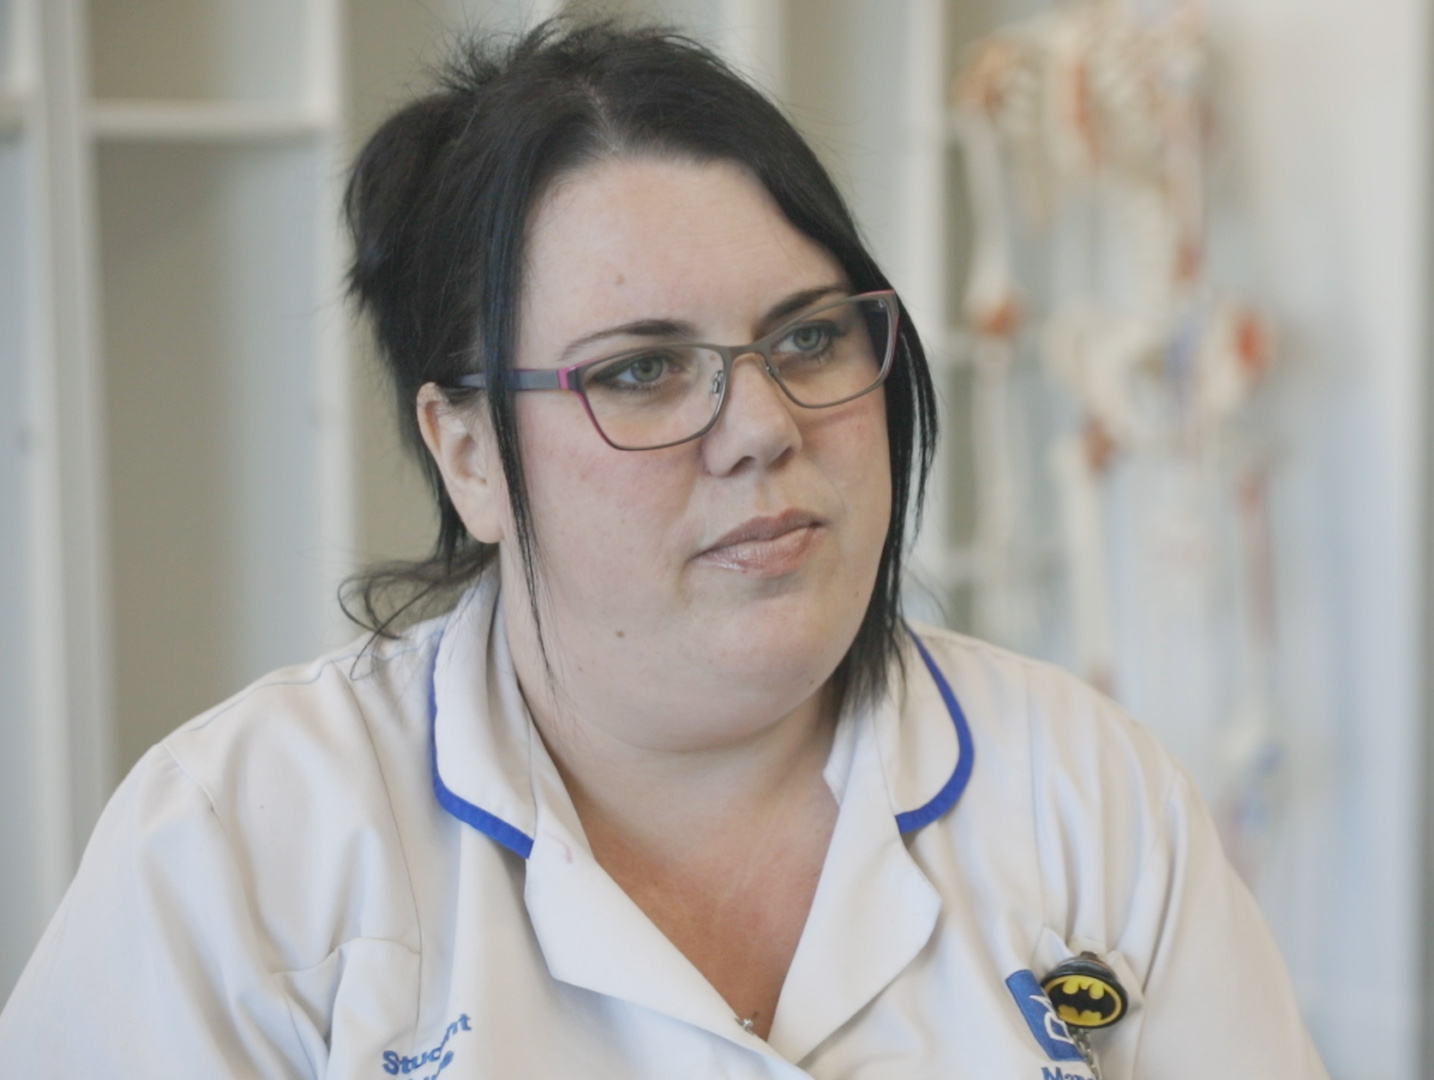 Natalie Brookes helped teach more than 400 people vital life-saving skills